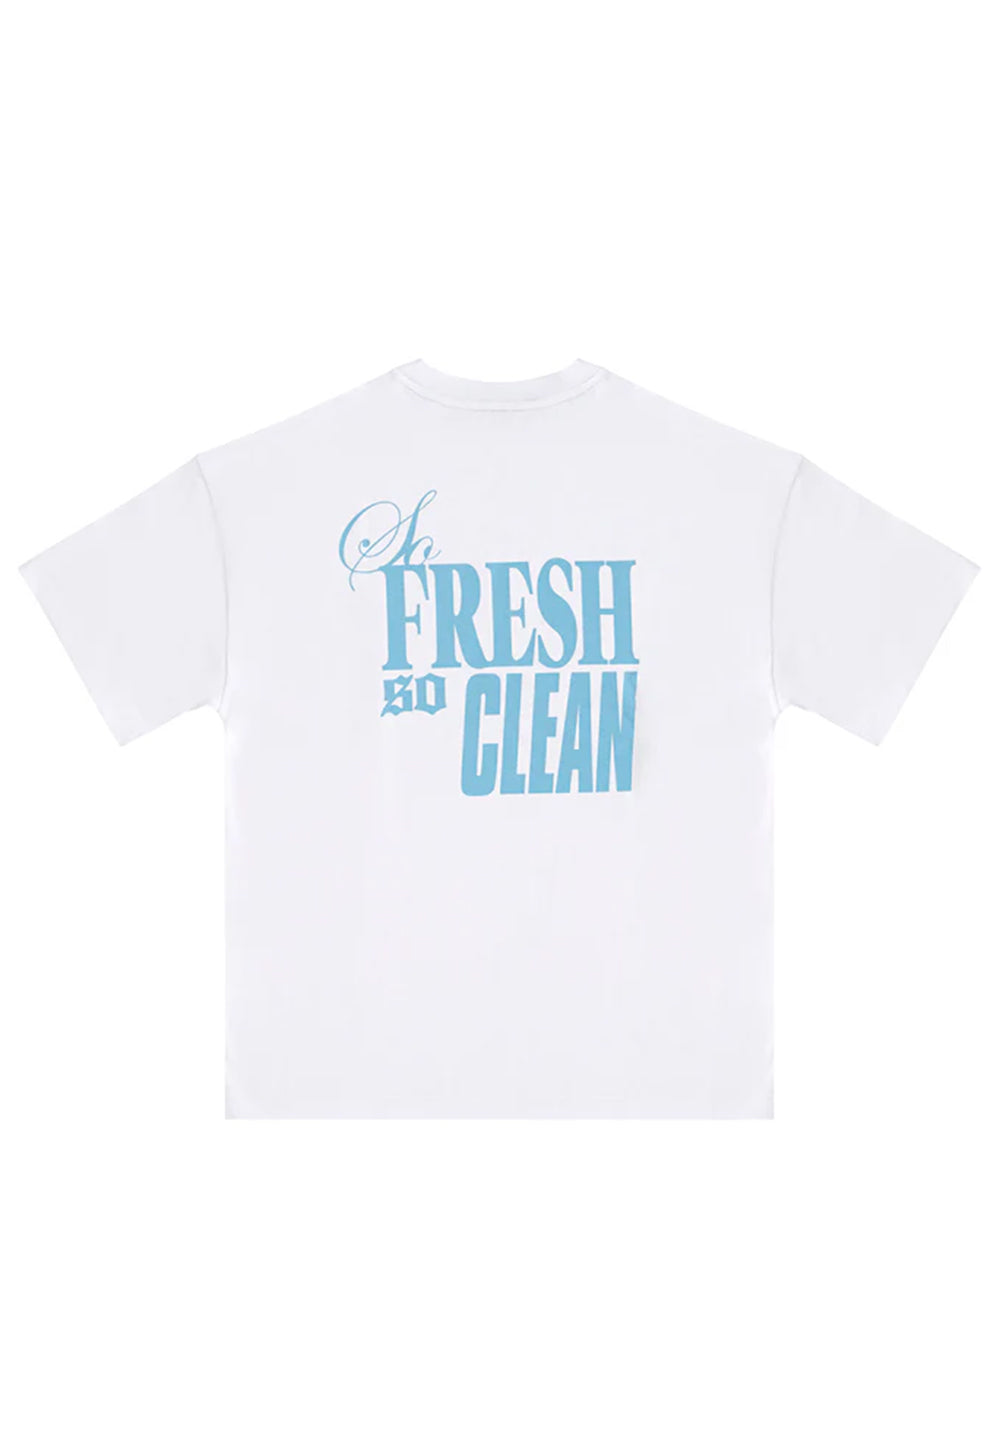 So Fresh So Clean T-shirt